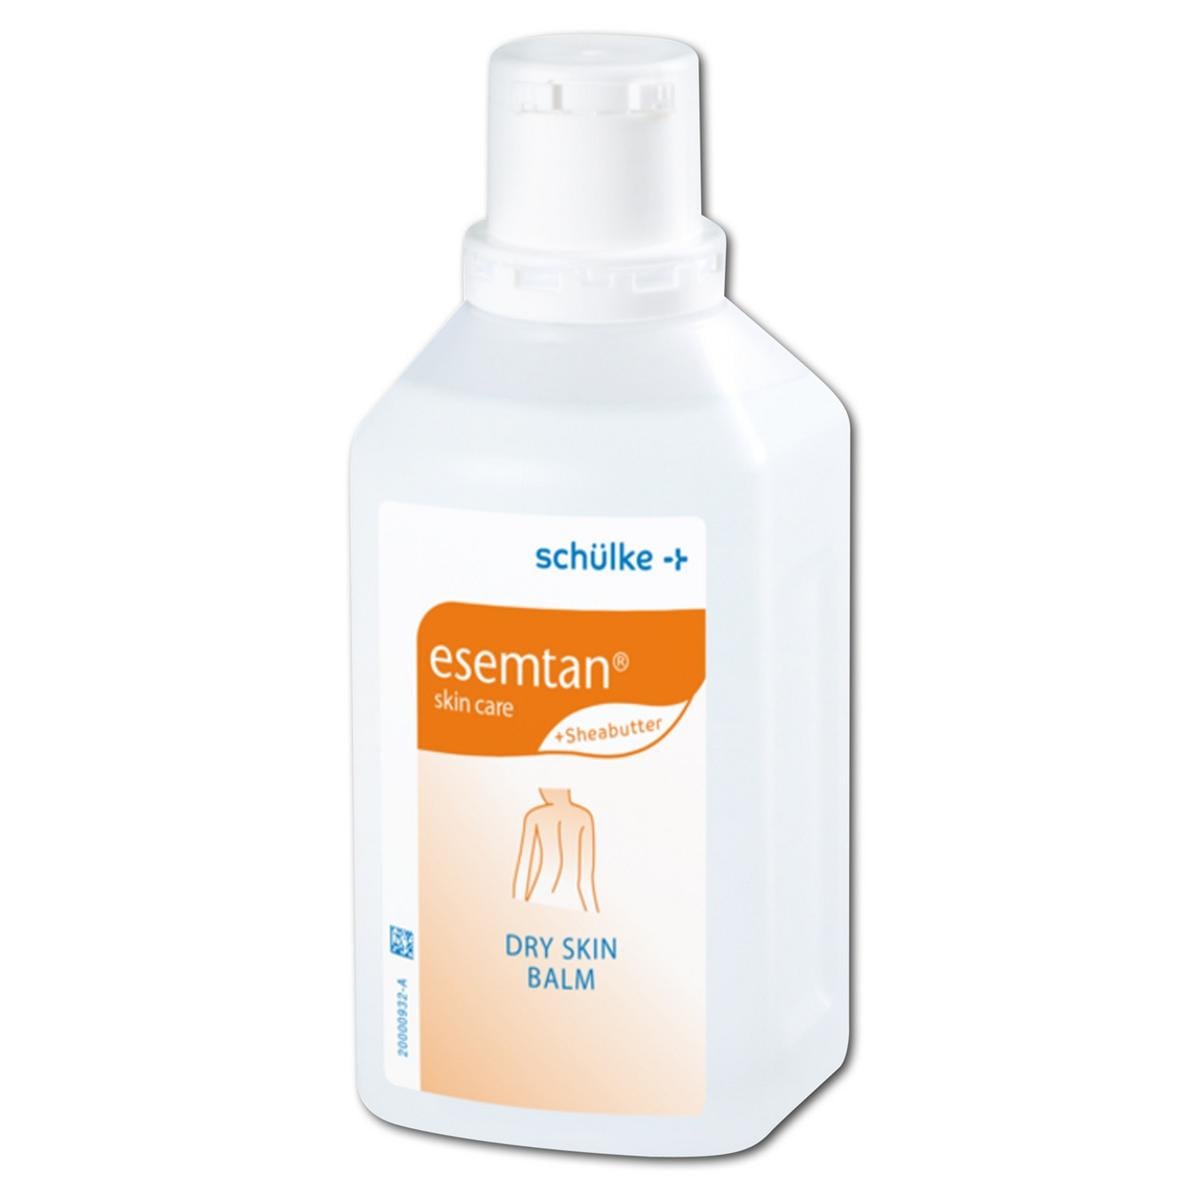 esemtan® dry skin balm - Flasche 500 ml